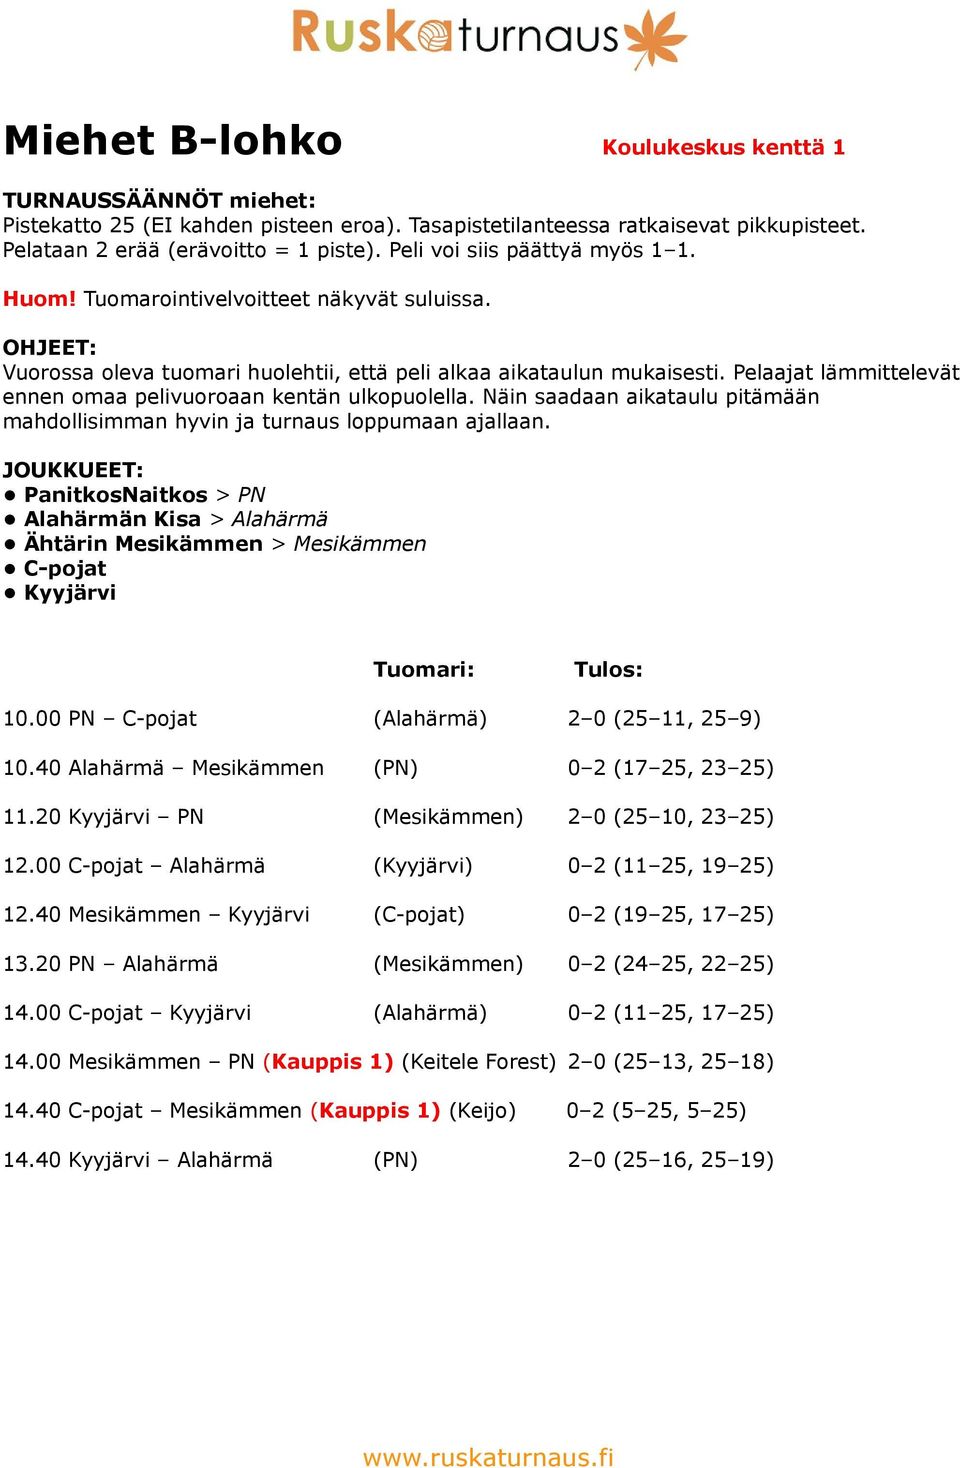 40 Alahärmä Mesikämmen (PN) 0 2 (17 25, 23 25) 11.20 Kyyjärvi PN (Mesikämmen) 2 0 (25 10, 23 25) 12.00 C-pojat Alahärmä (Kyyjärvi) 0 2 (11 25, 19 25) 12.